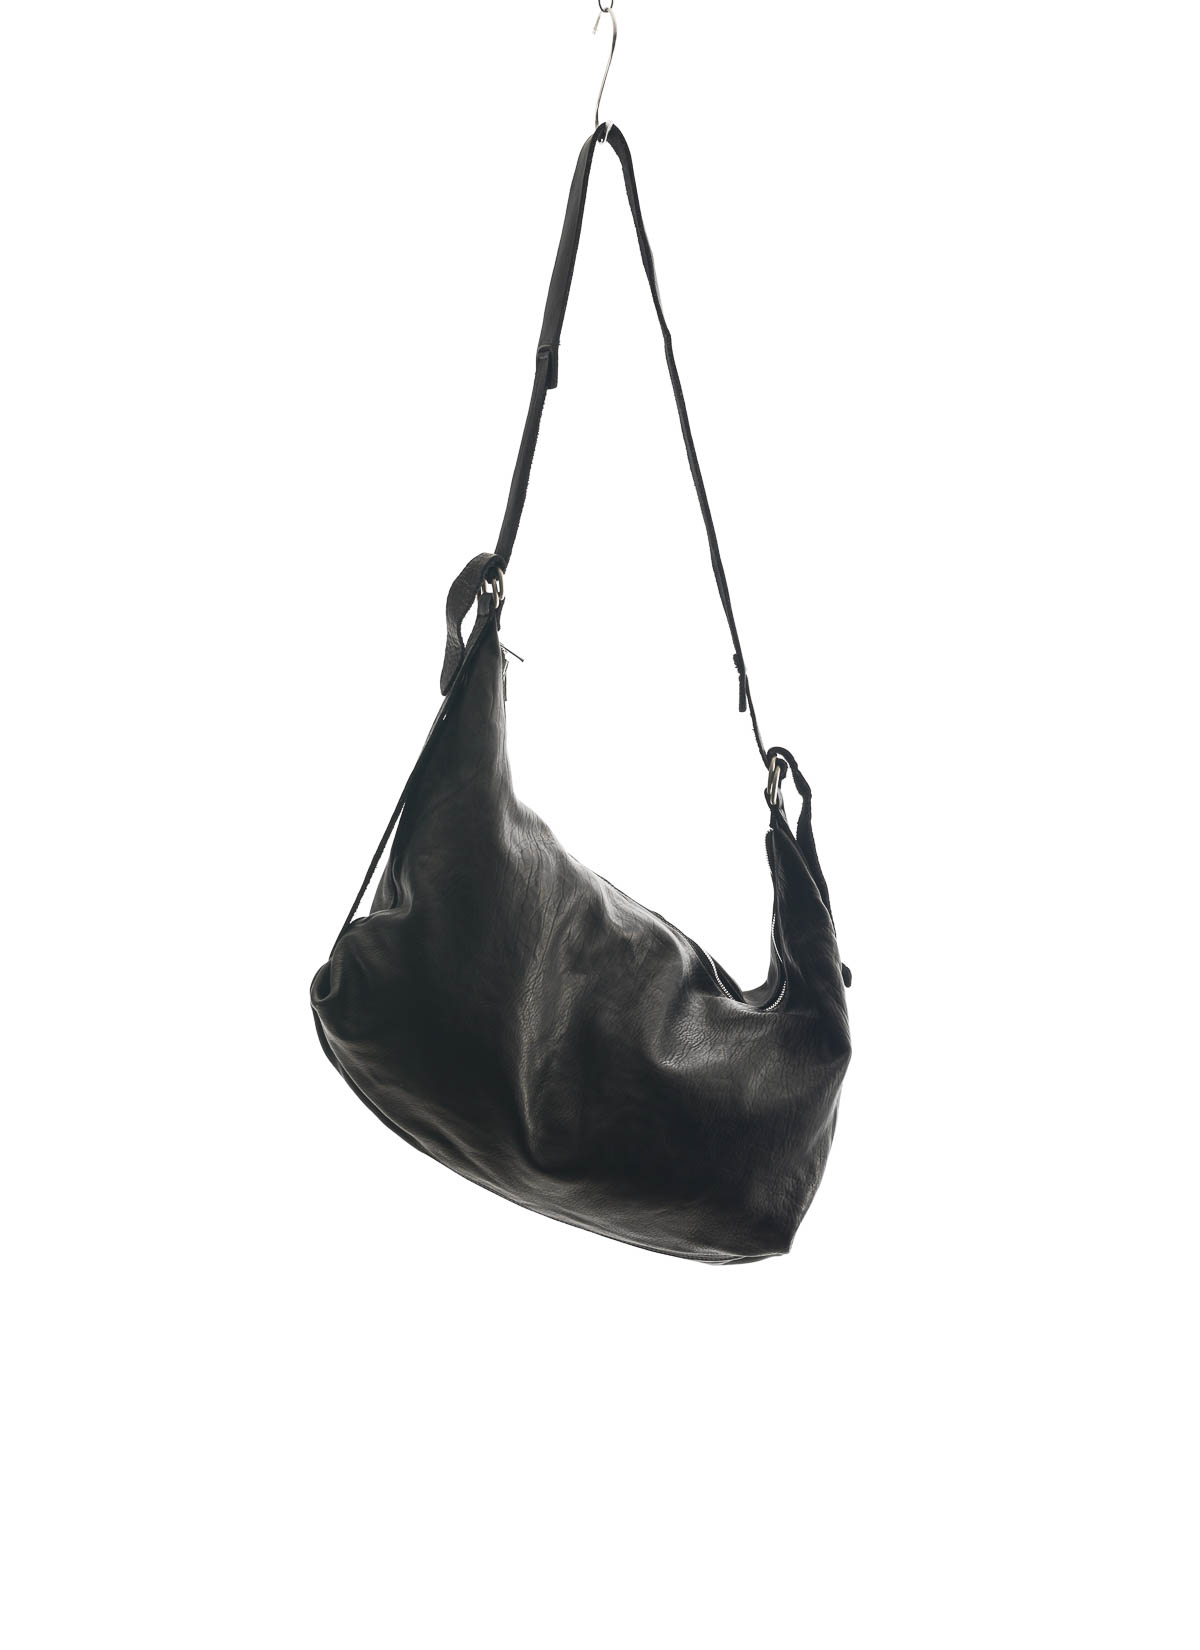 hide-m | GUIDI Q15 Large Shoulder Bag, black horse leather